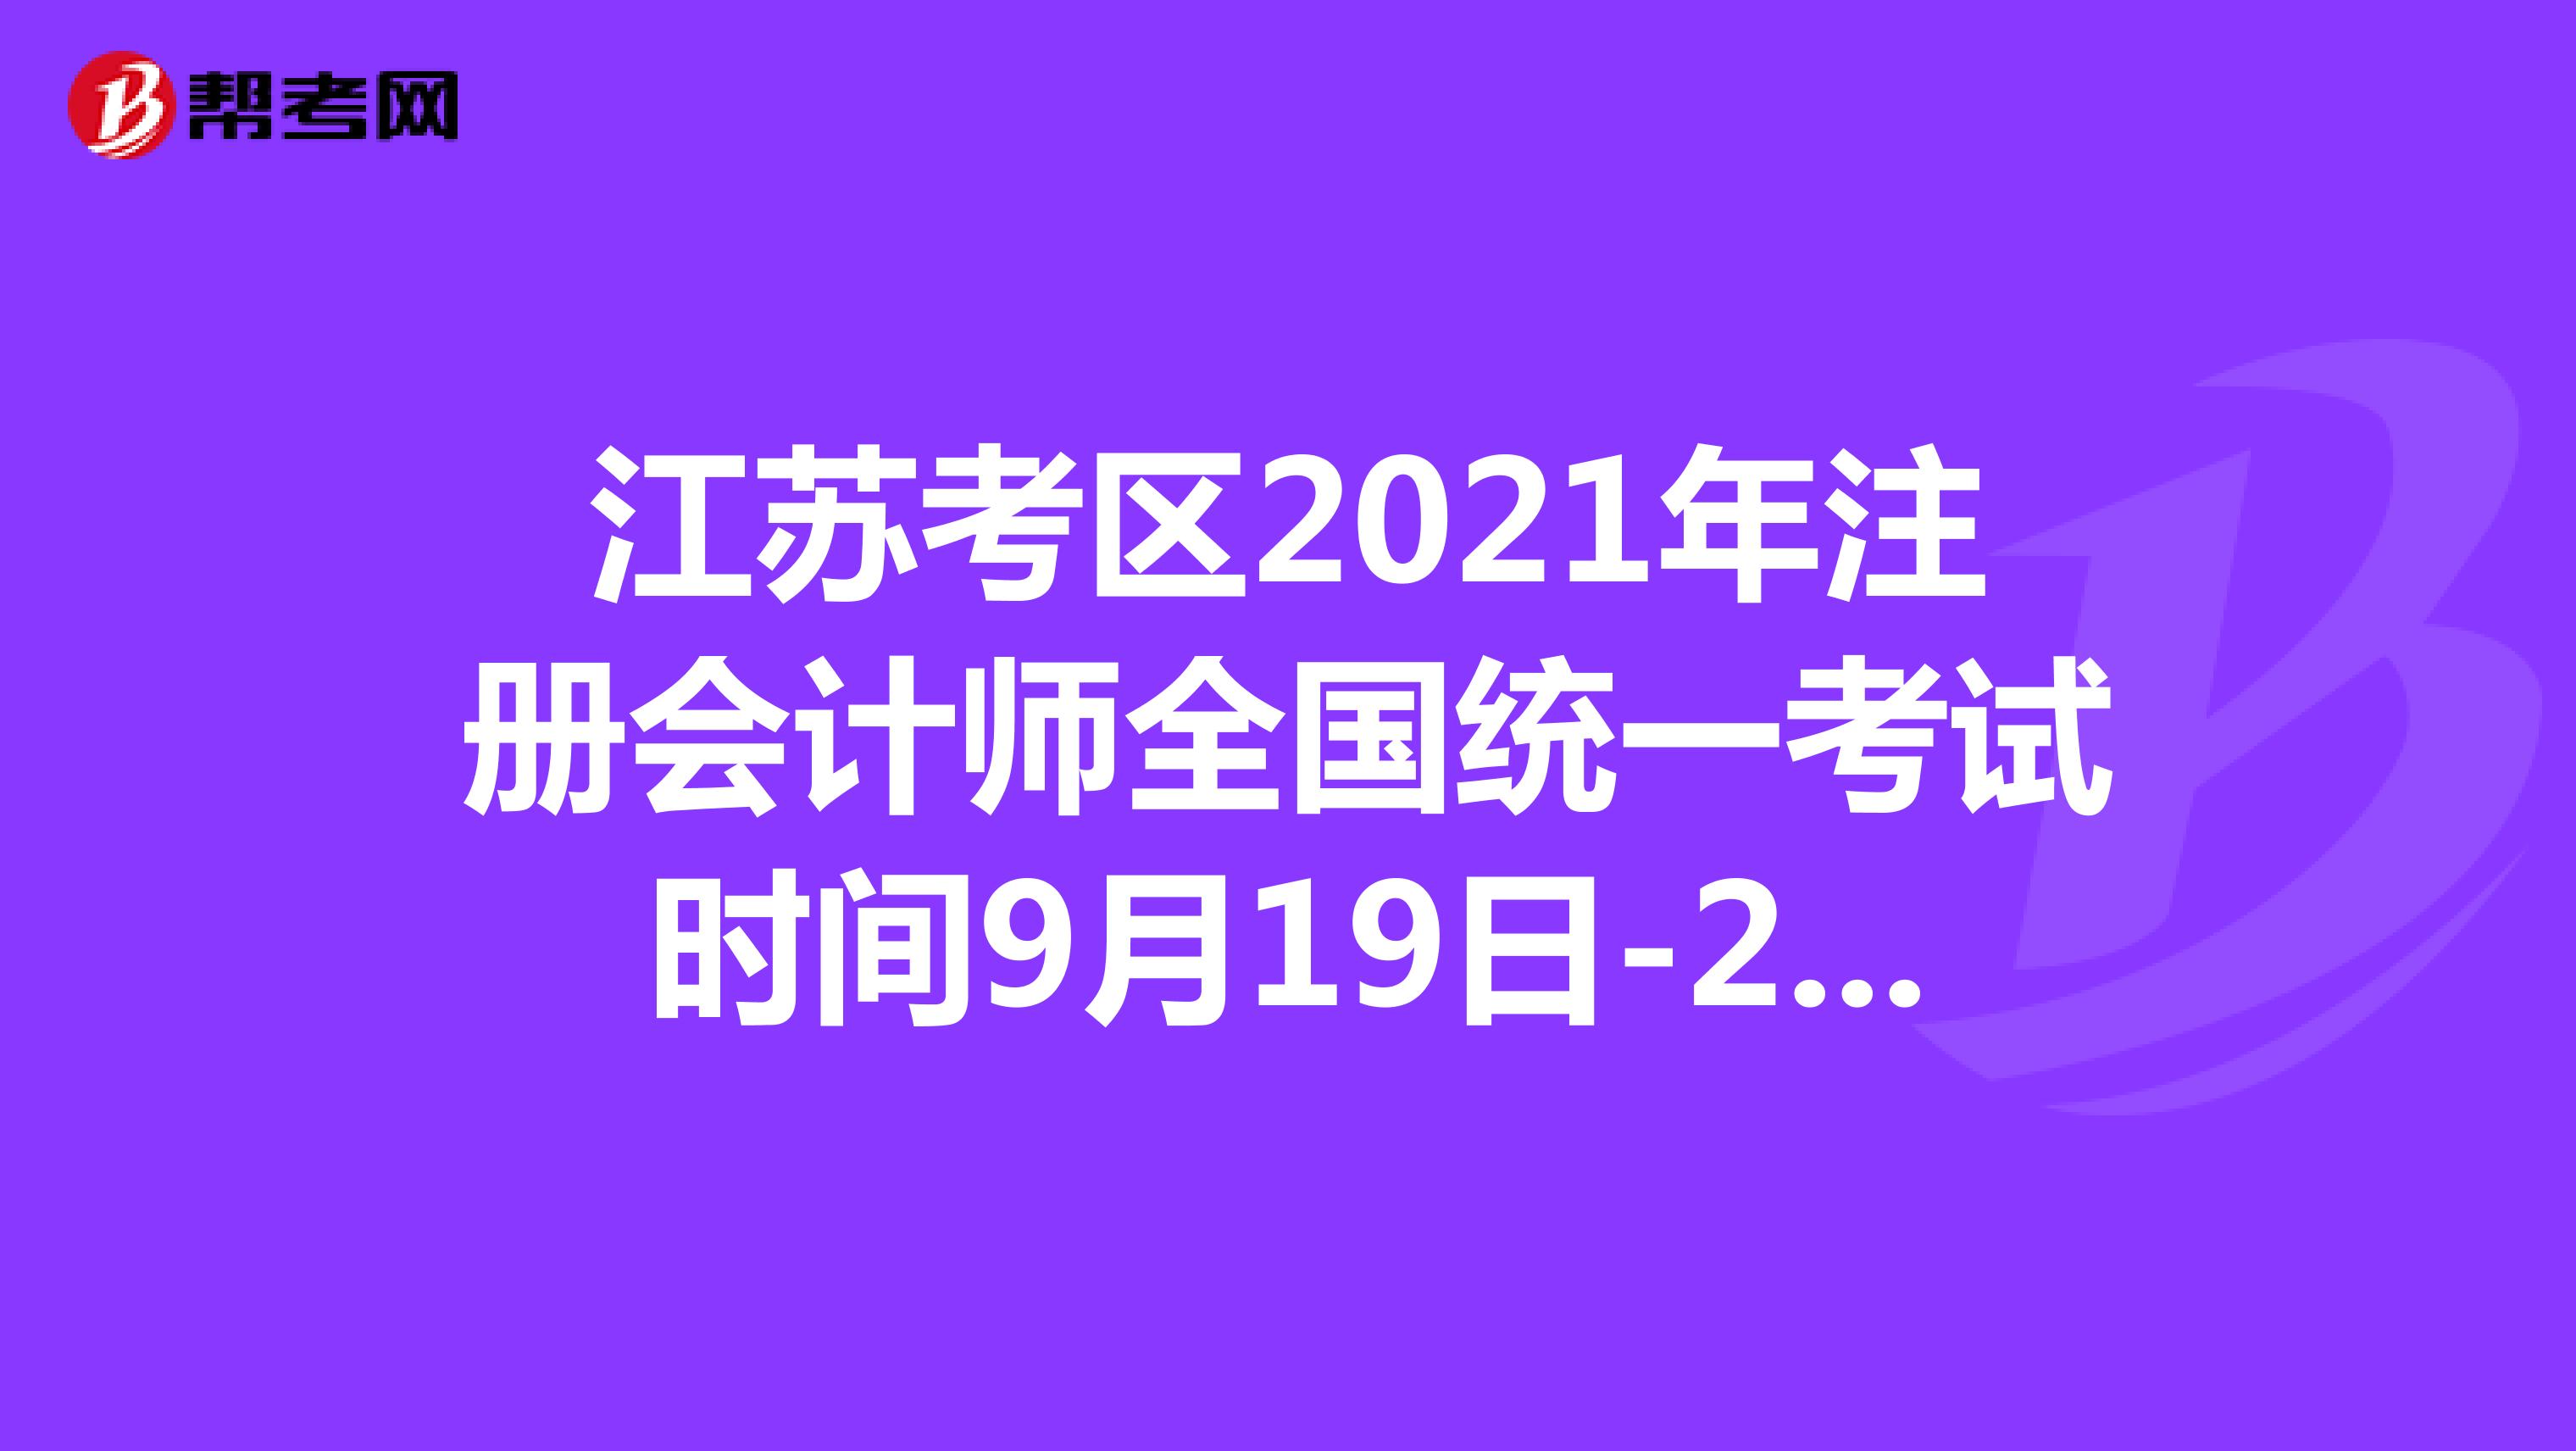 江苏考区2021年注册会计师全国统一考试时间9月19日-21日